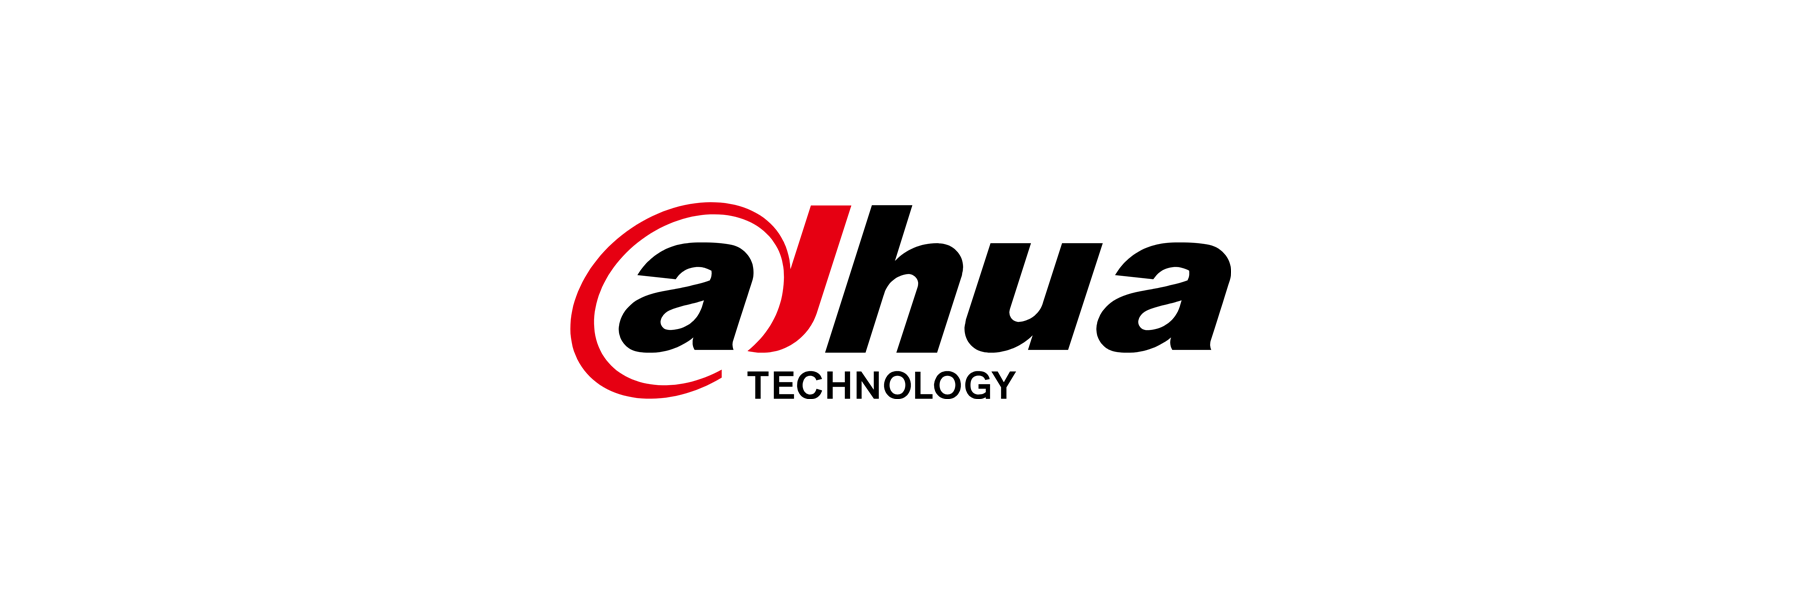 Dahua ist ein weltweit führender Anbieter von...